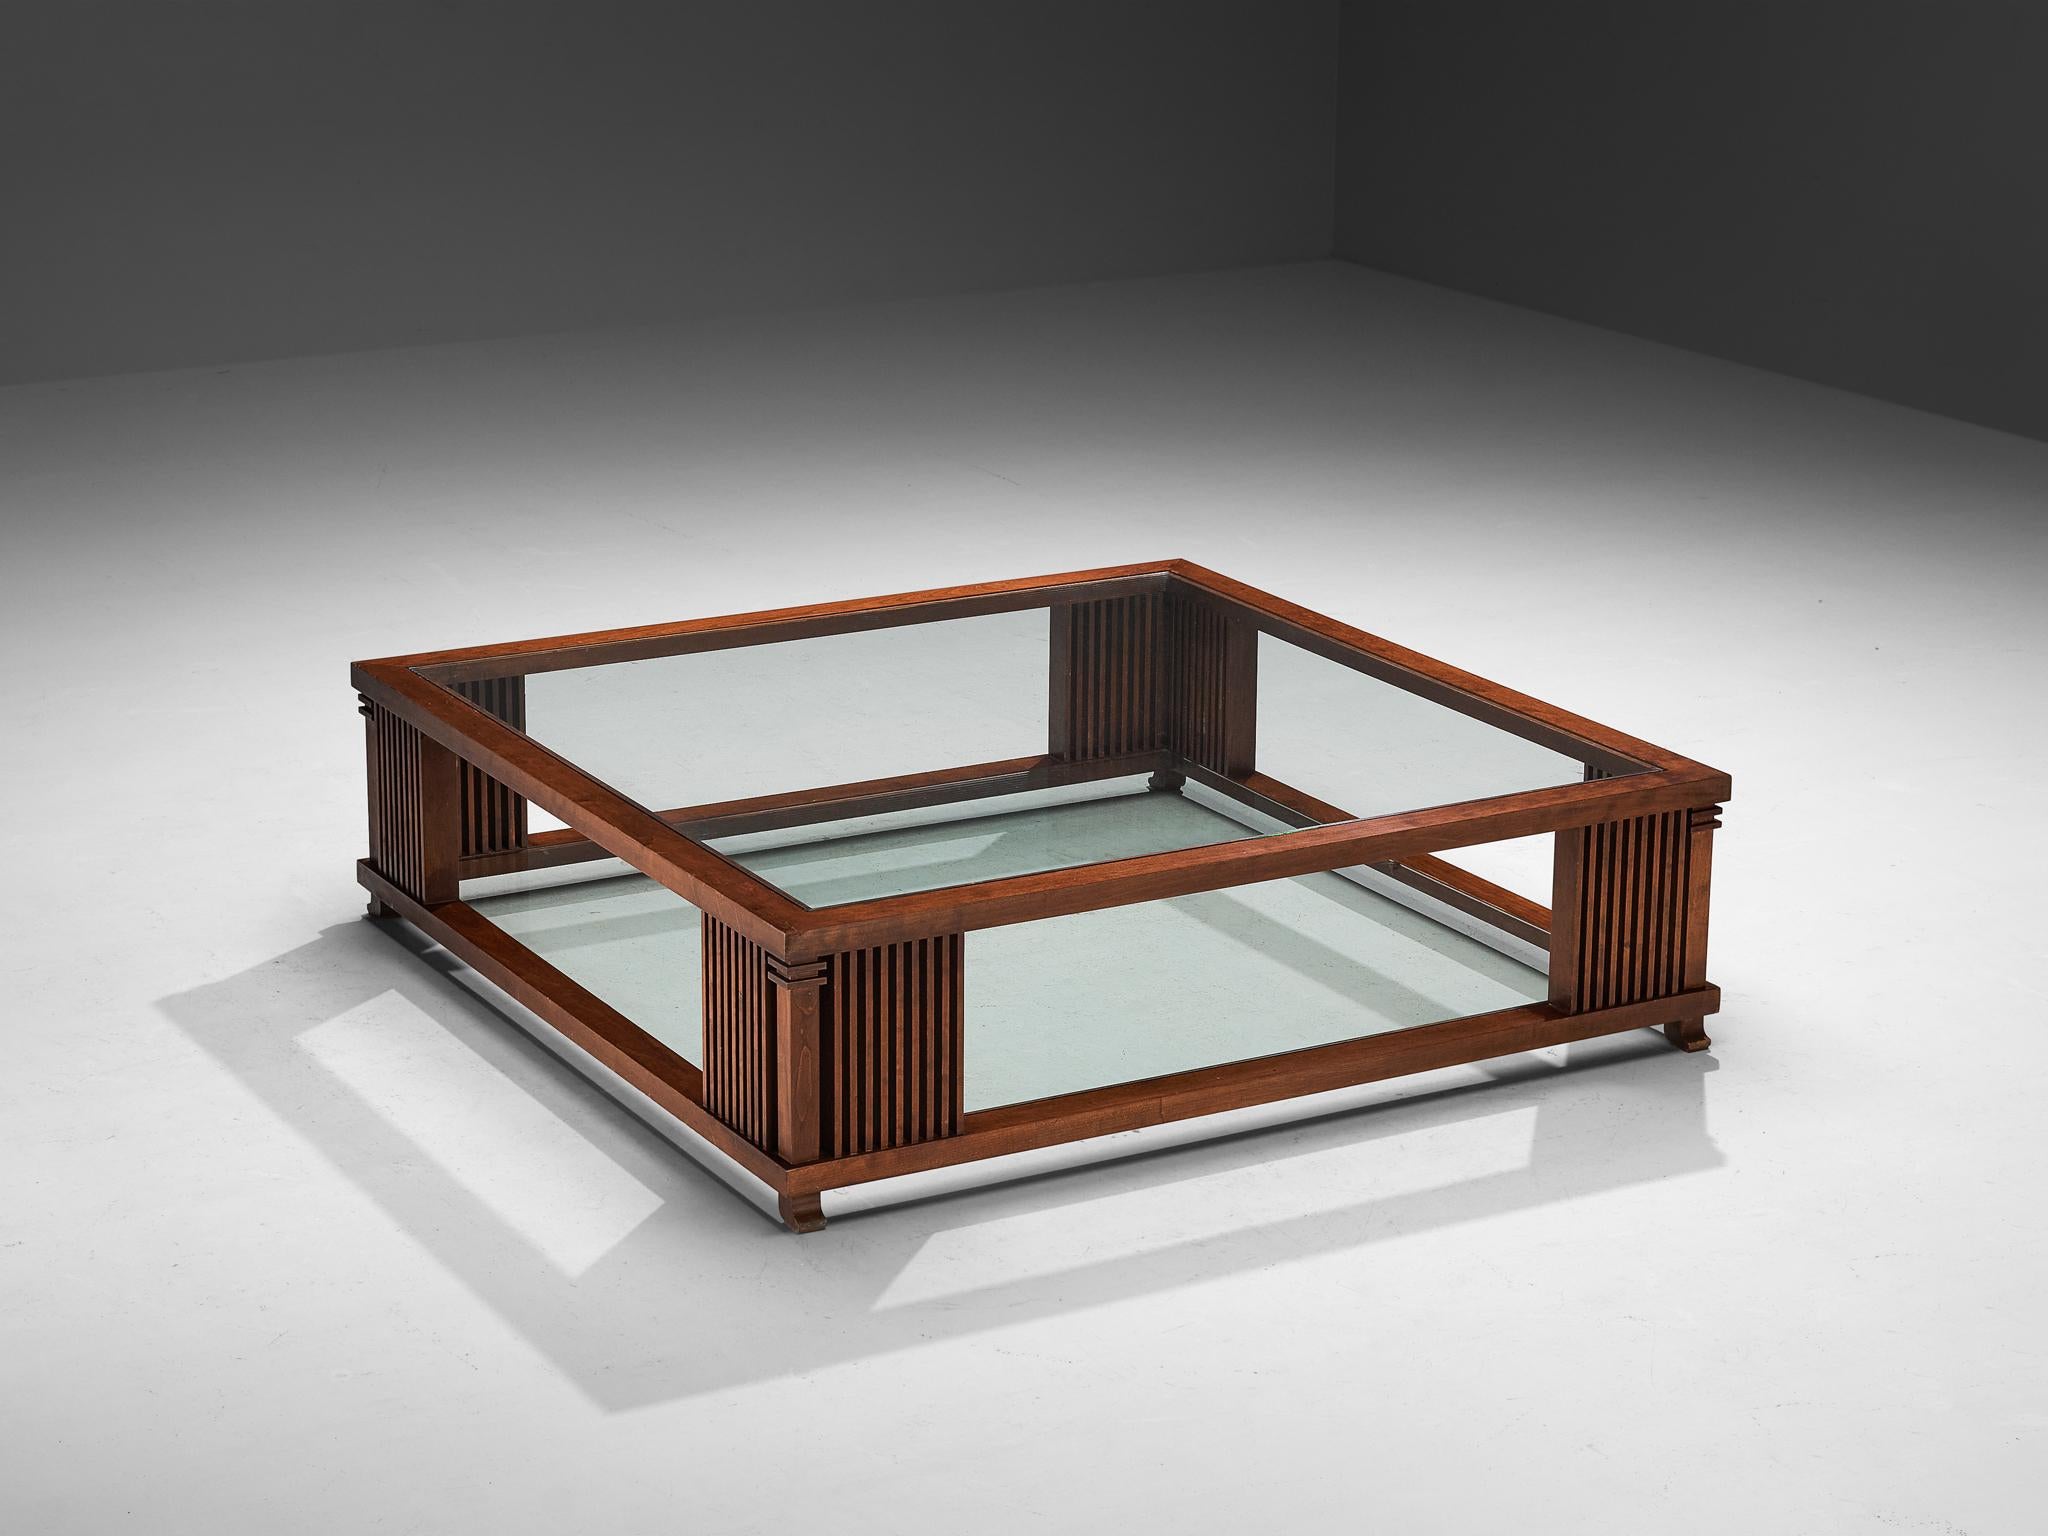 Frank Lloyd Wright pour Cassina, table basse, modèle 'Robys', érable, verre, Italie, 1986

Conçue à l'origine par Frank Lloyd Wright pour la Robys House en 1908, cette table a été reproduite par Cassina en 1986. Une table bien construite, dont les